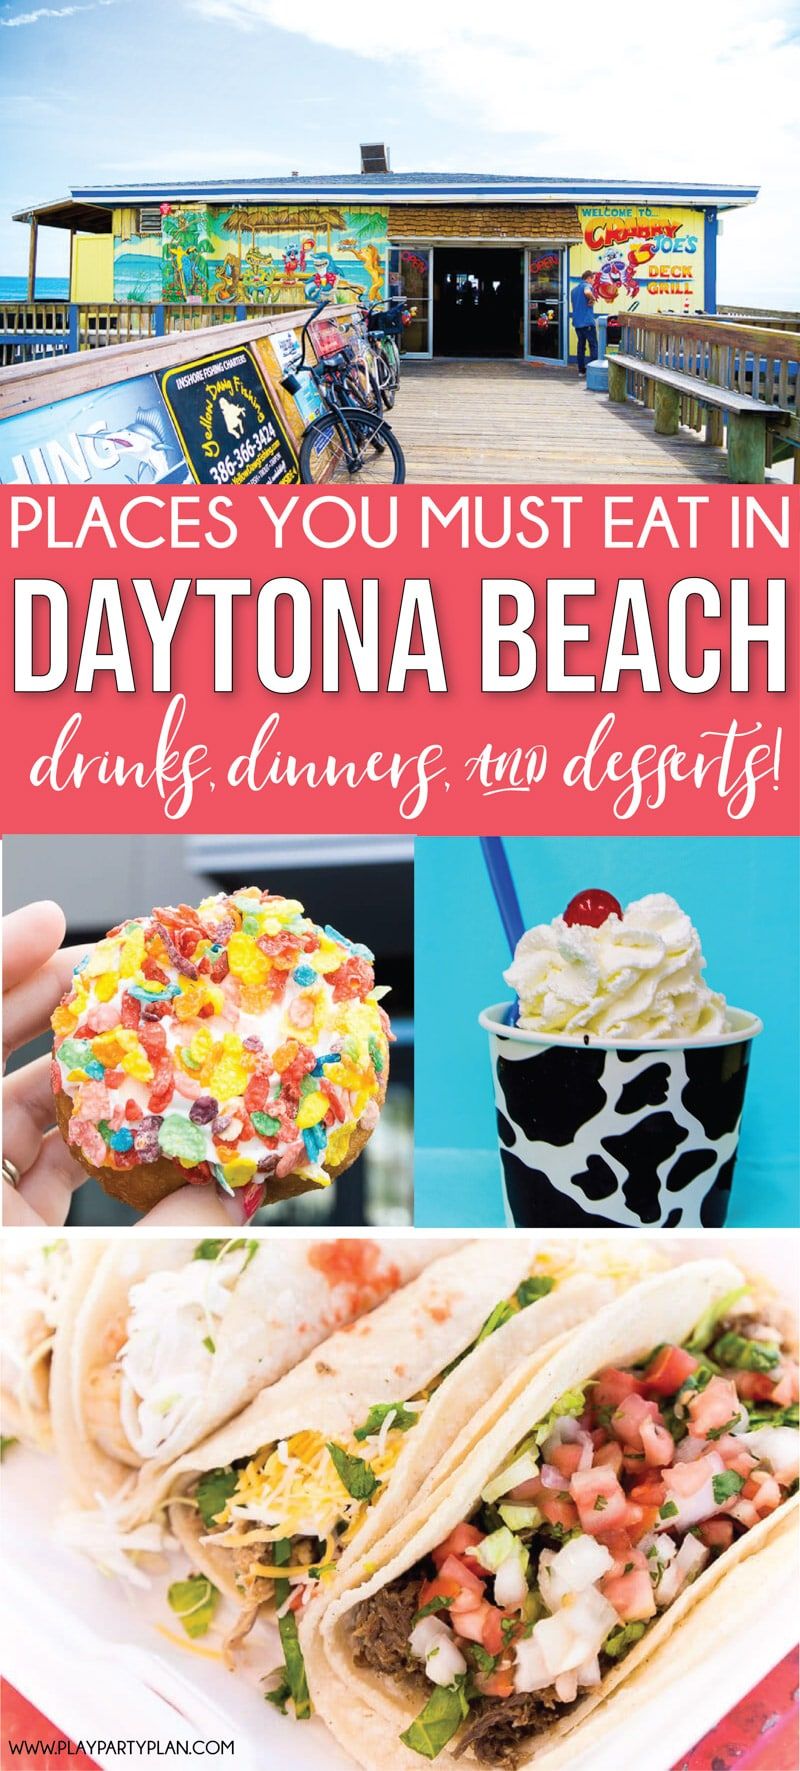 Restoran terbaik di Pantai Daytona Florida! Segala-galanya dari makanan di jalan raya hingga makanan di dekat pantai!